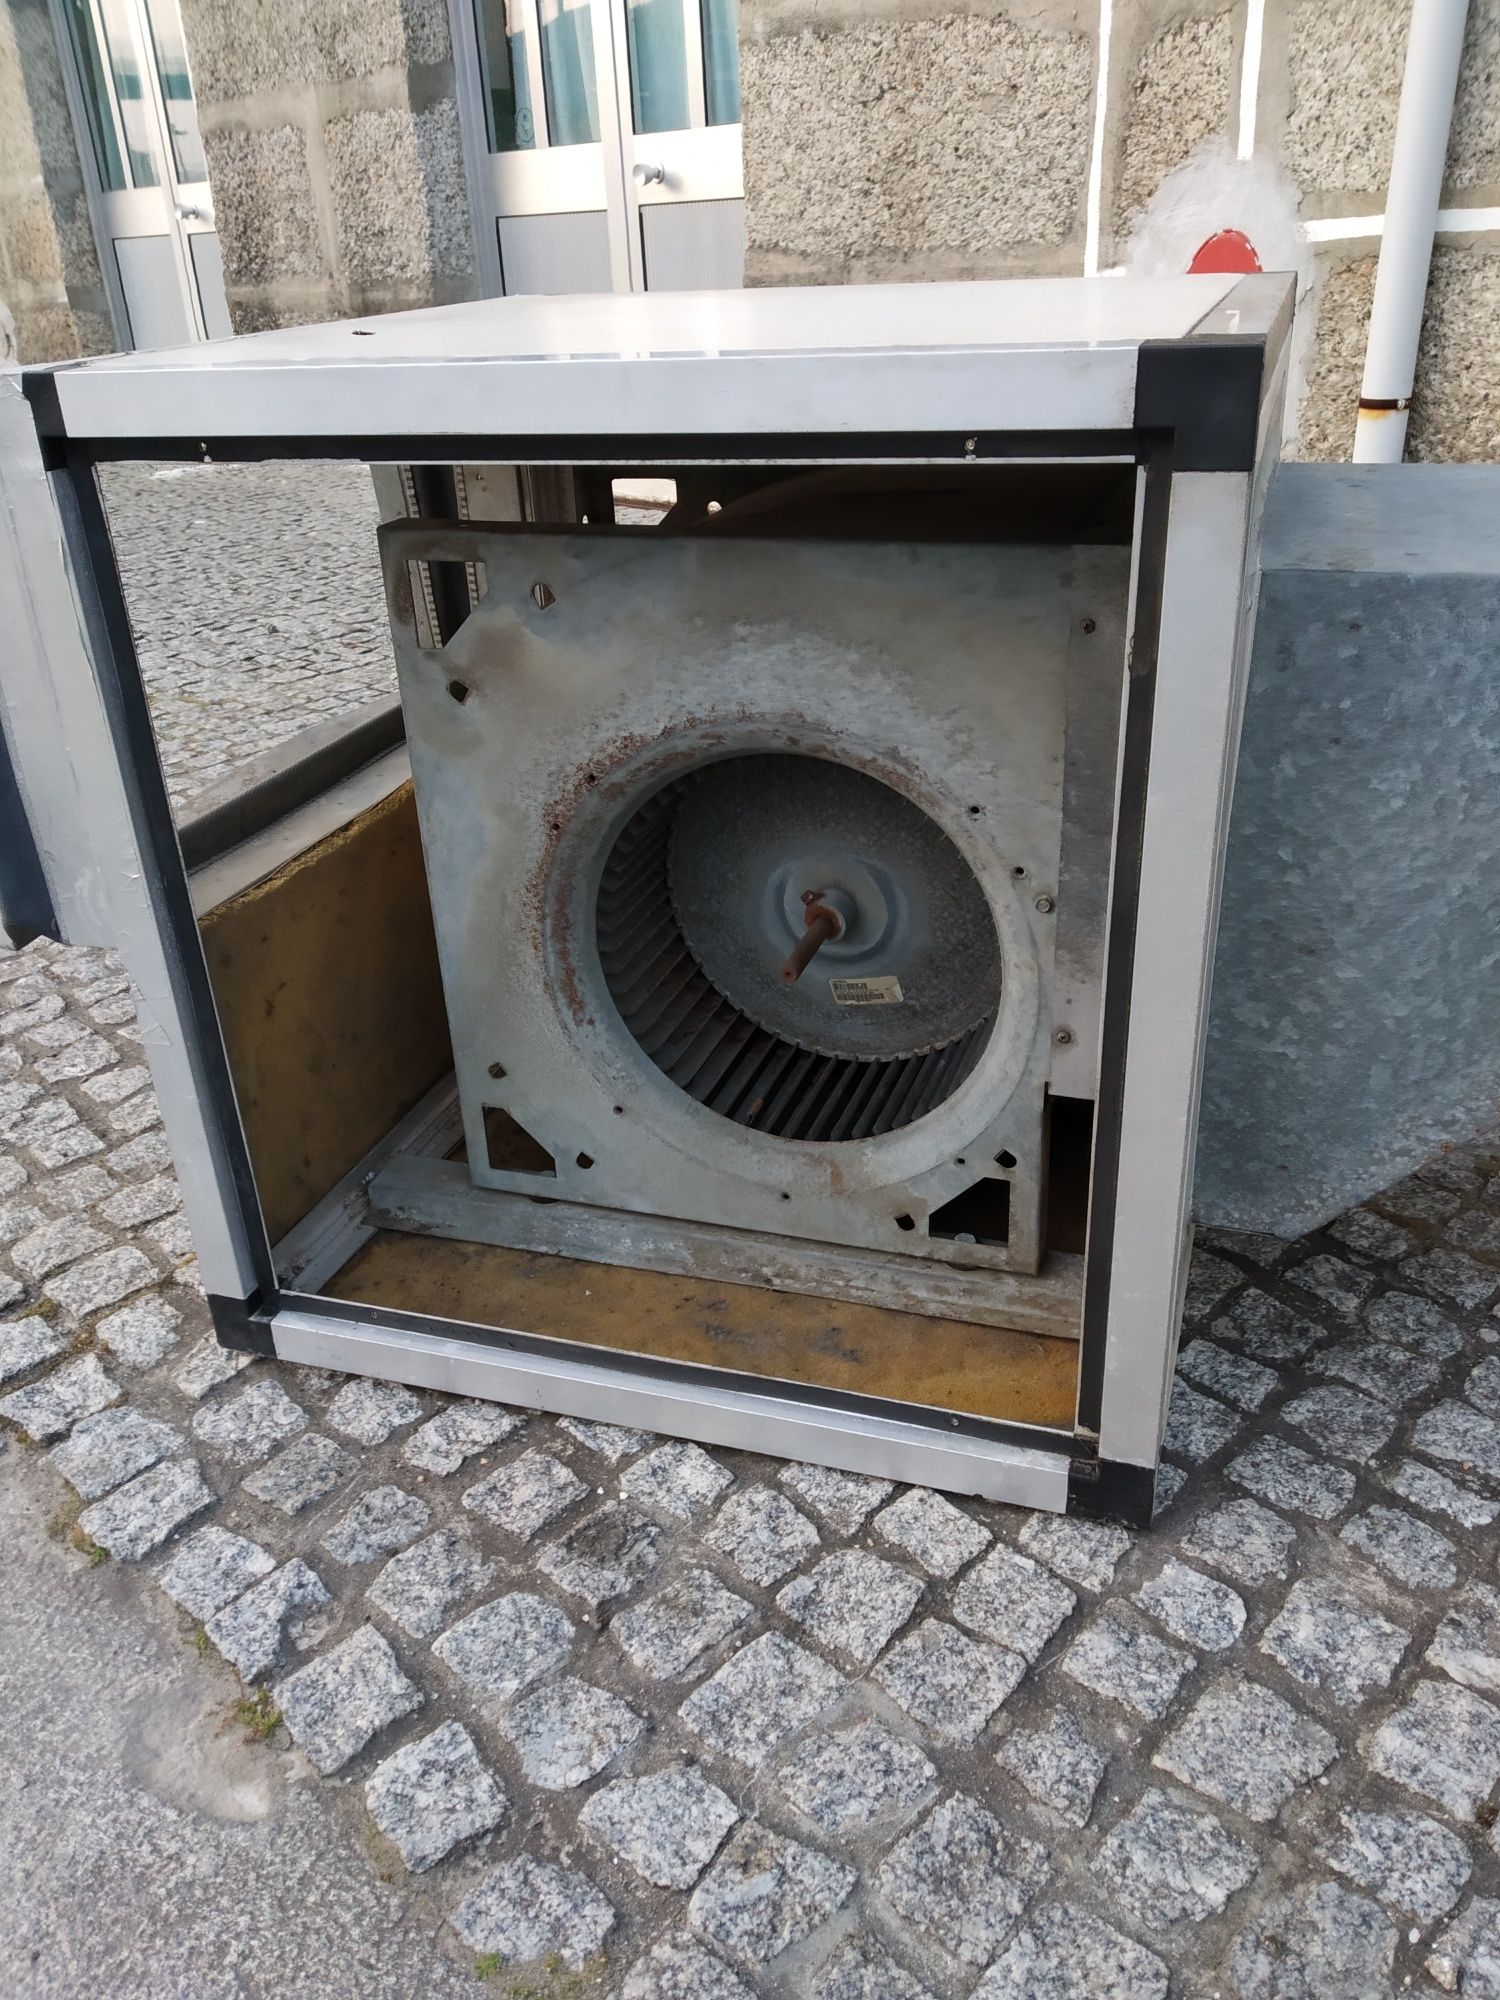 Extrator / ventilador industrial  usado em boas condições.